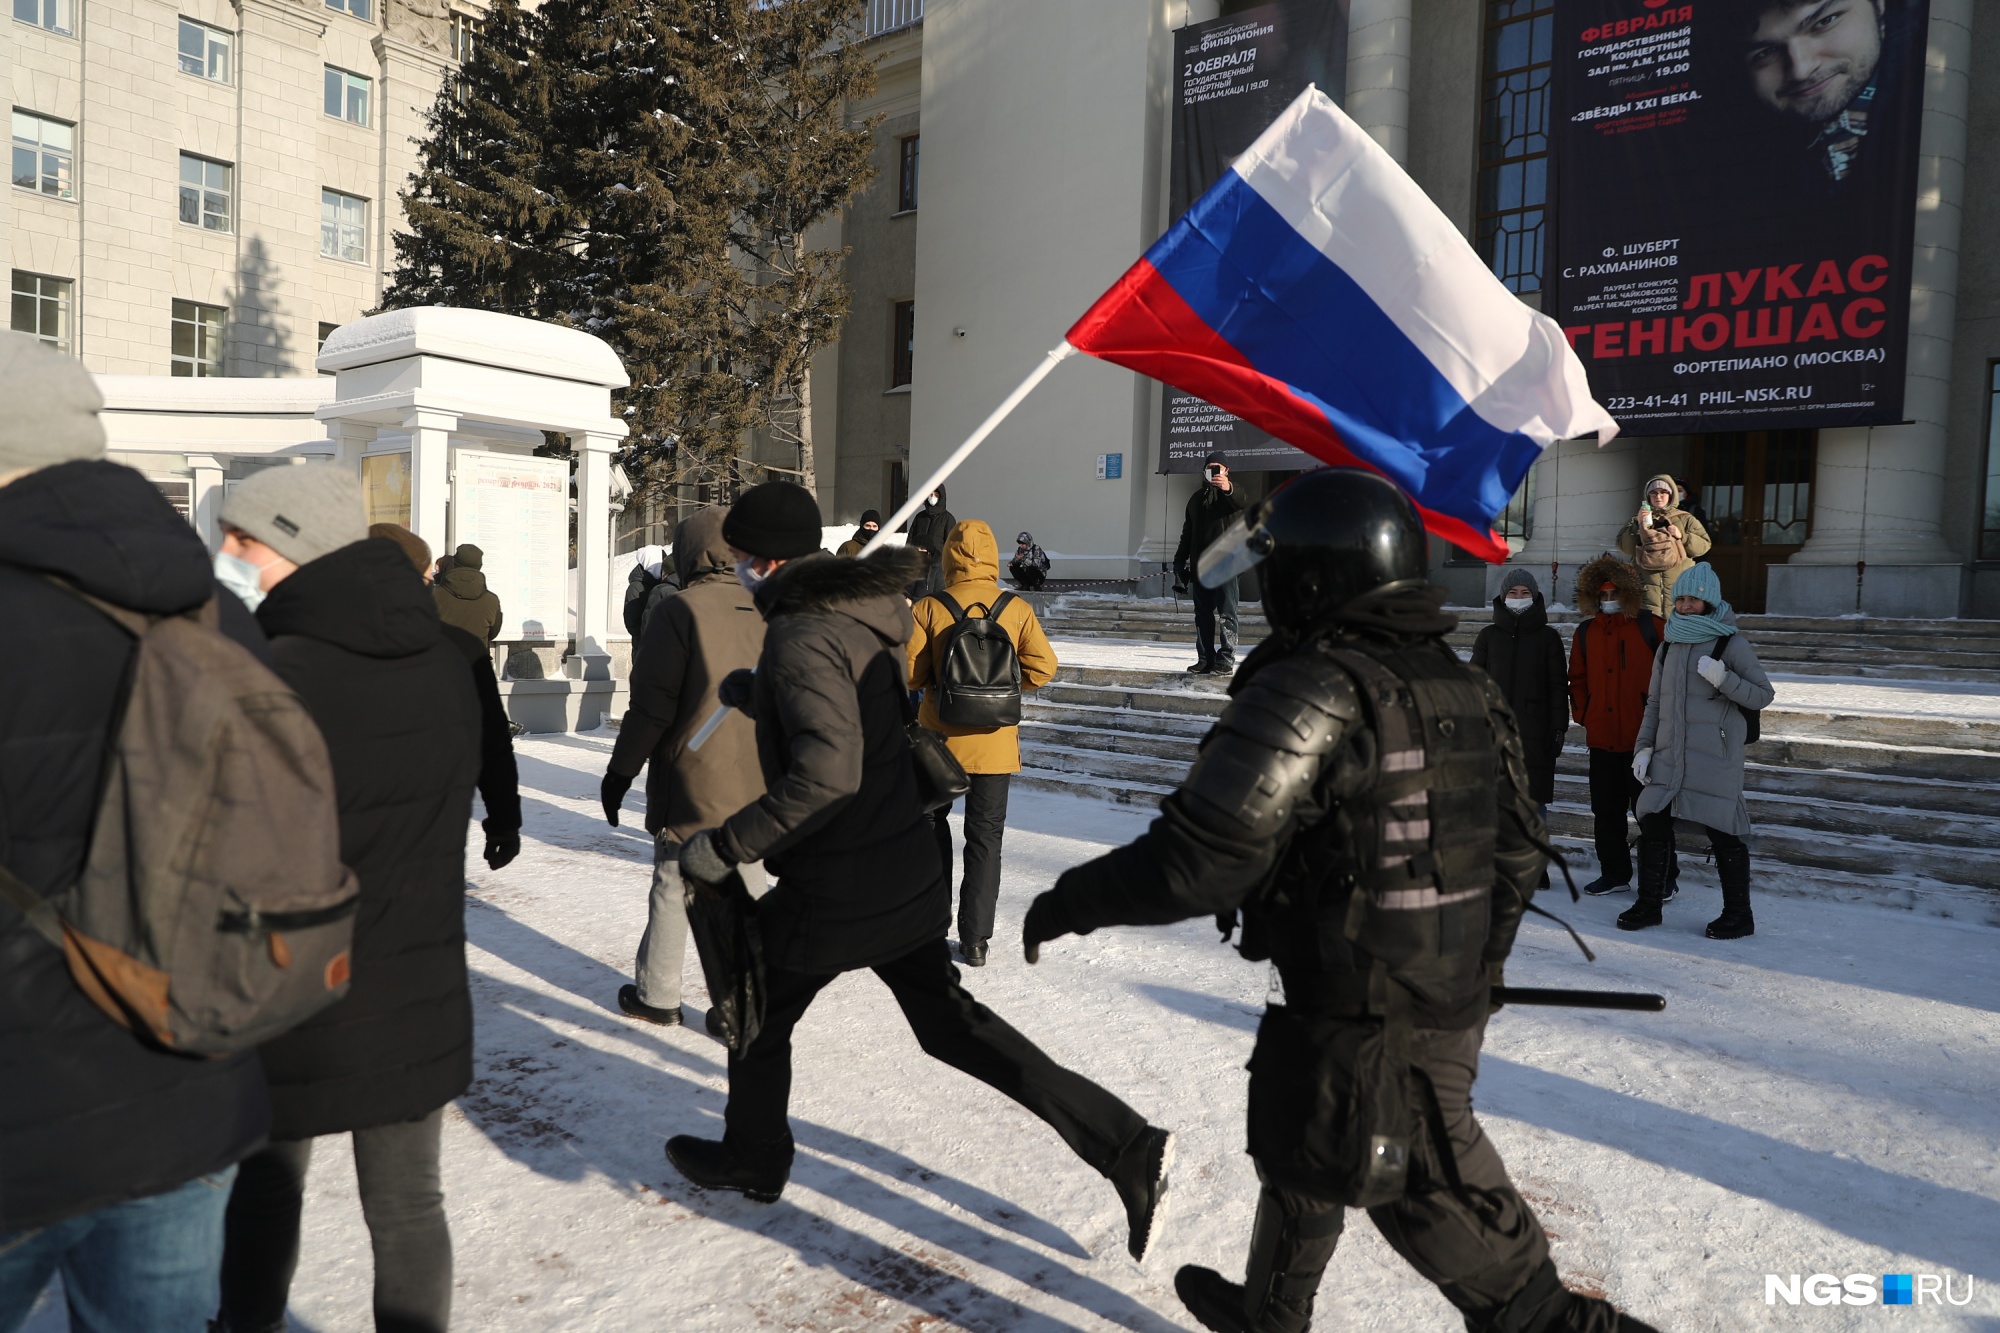 Когда народ дошел до часовни, участники начали разбредаться, но в итоге все стекались к мэрии и на площадь Ленина